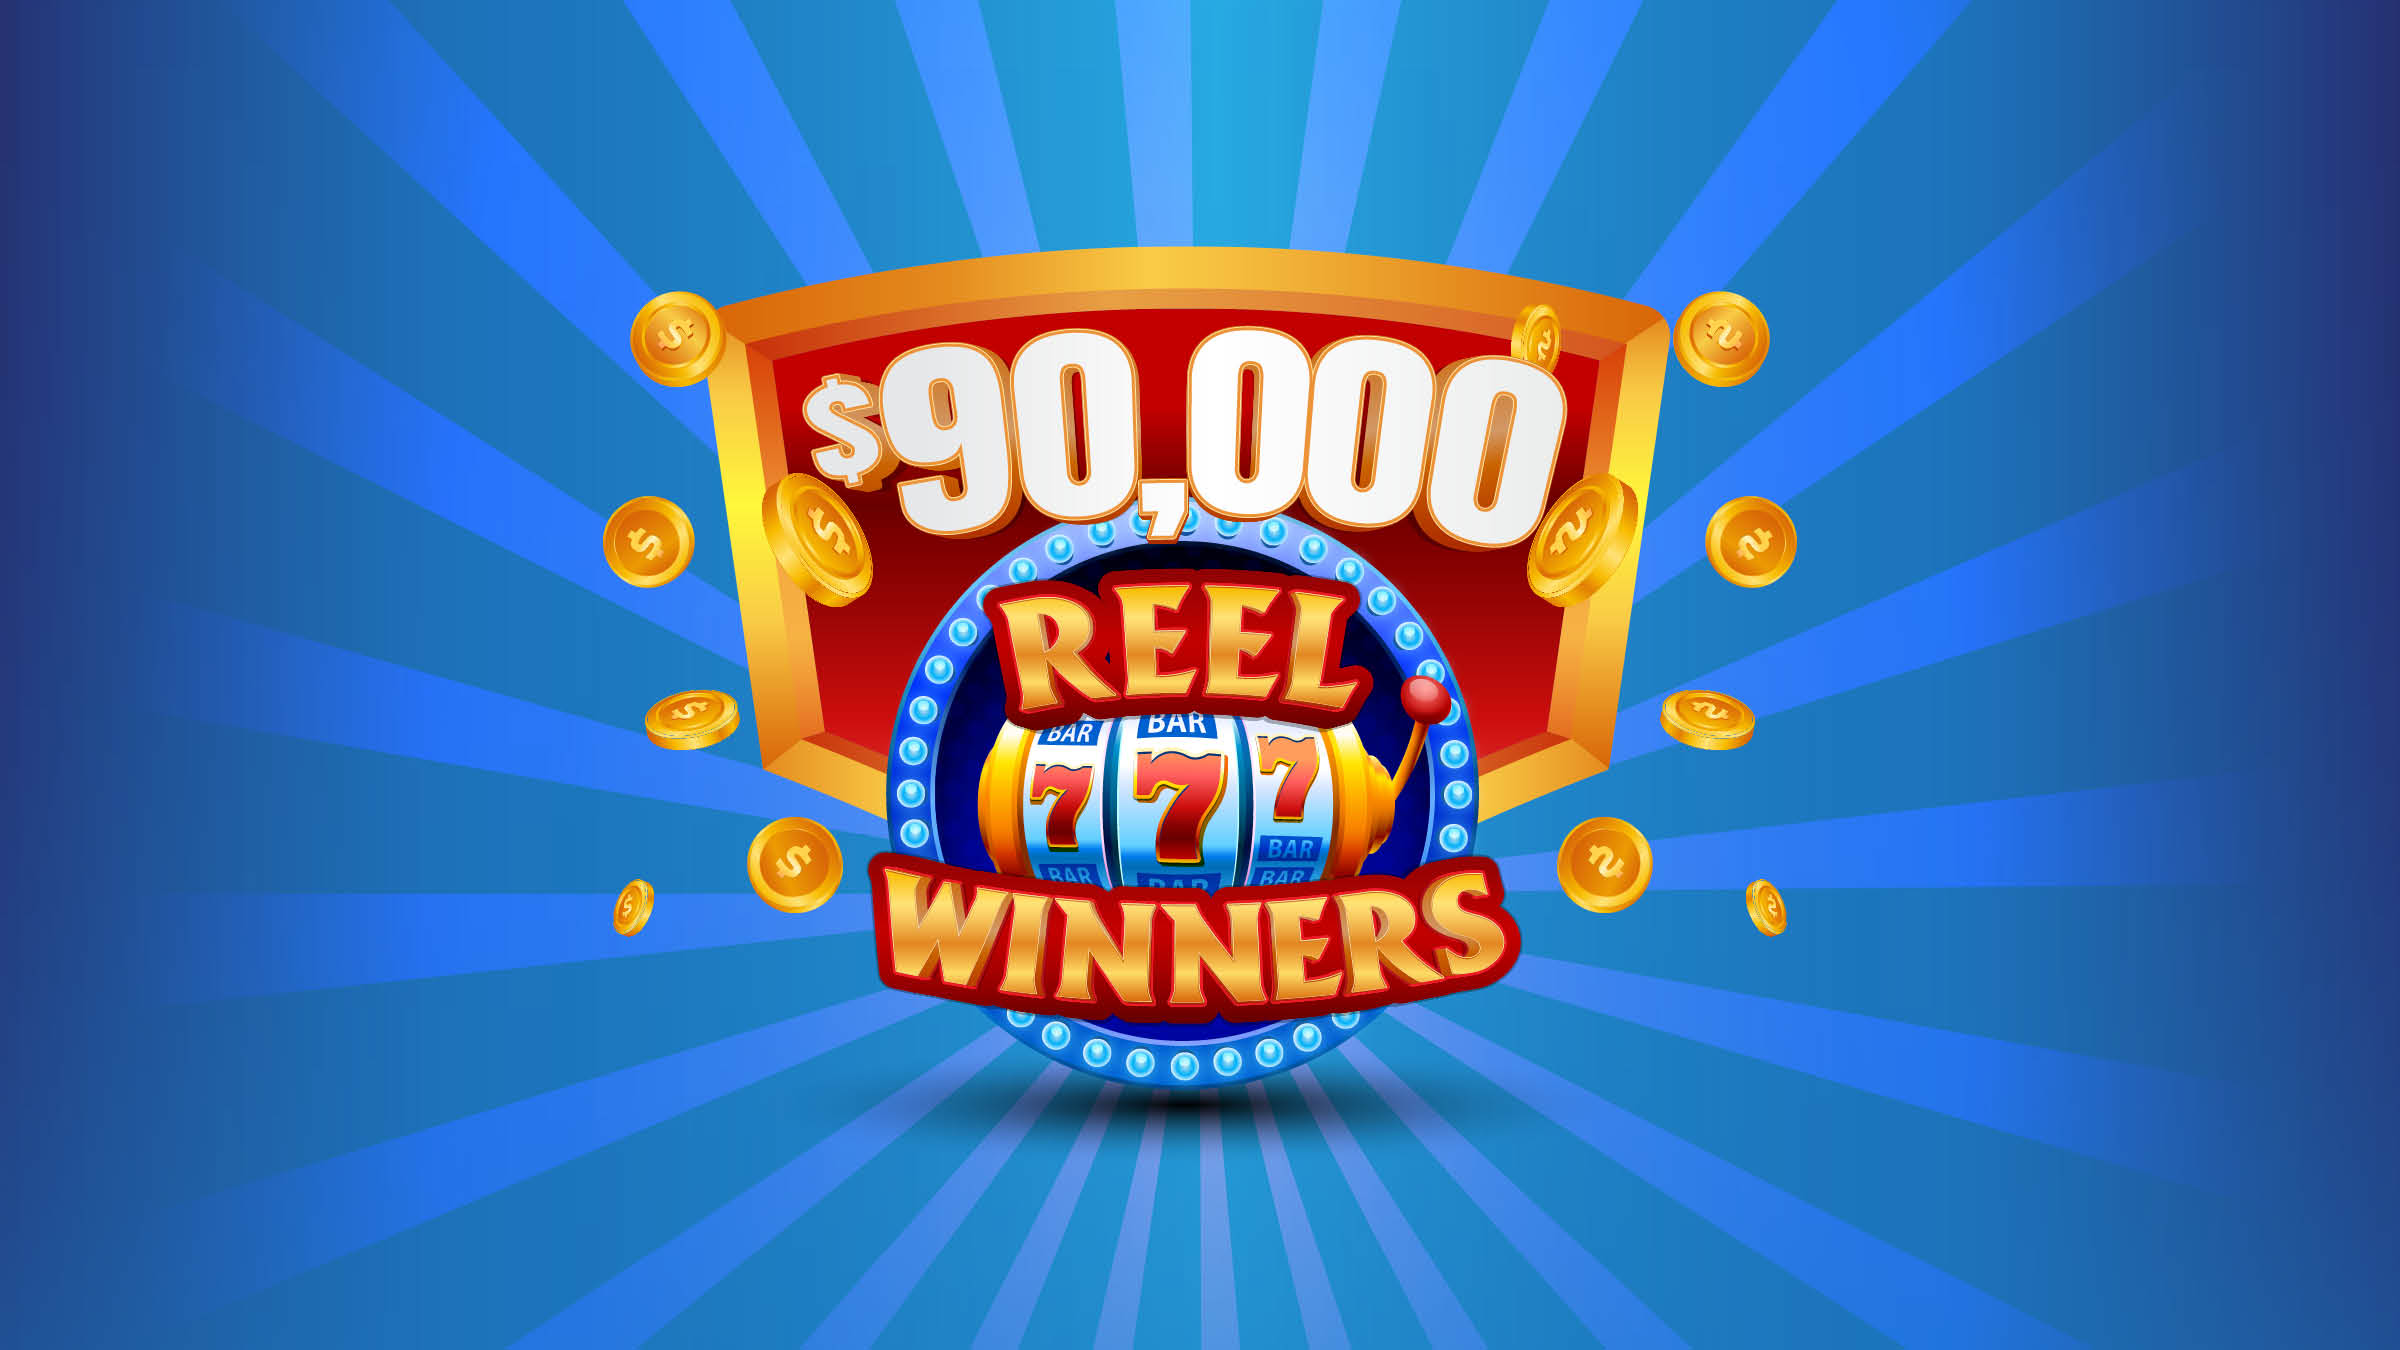 $90,000 REEL WINNERS